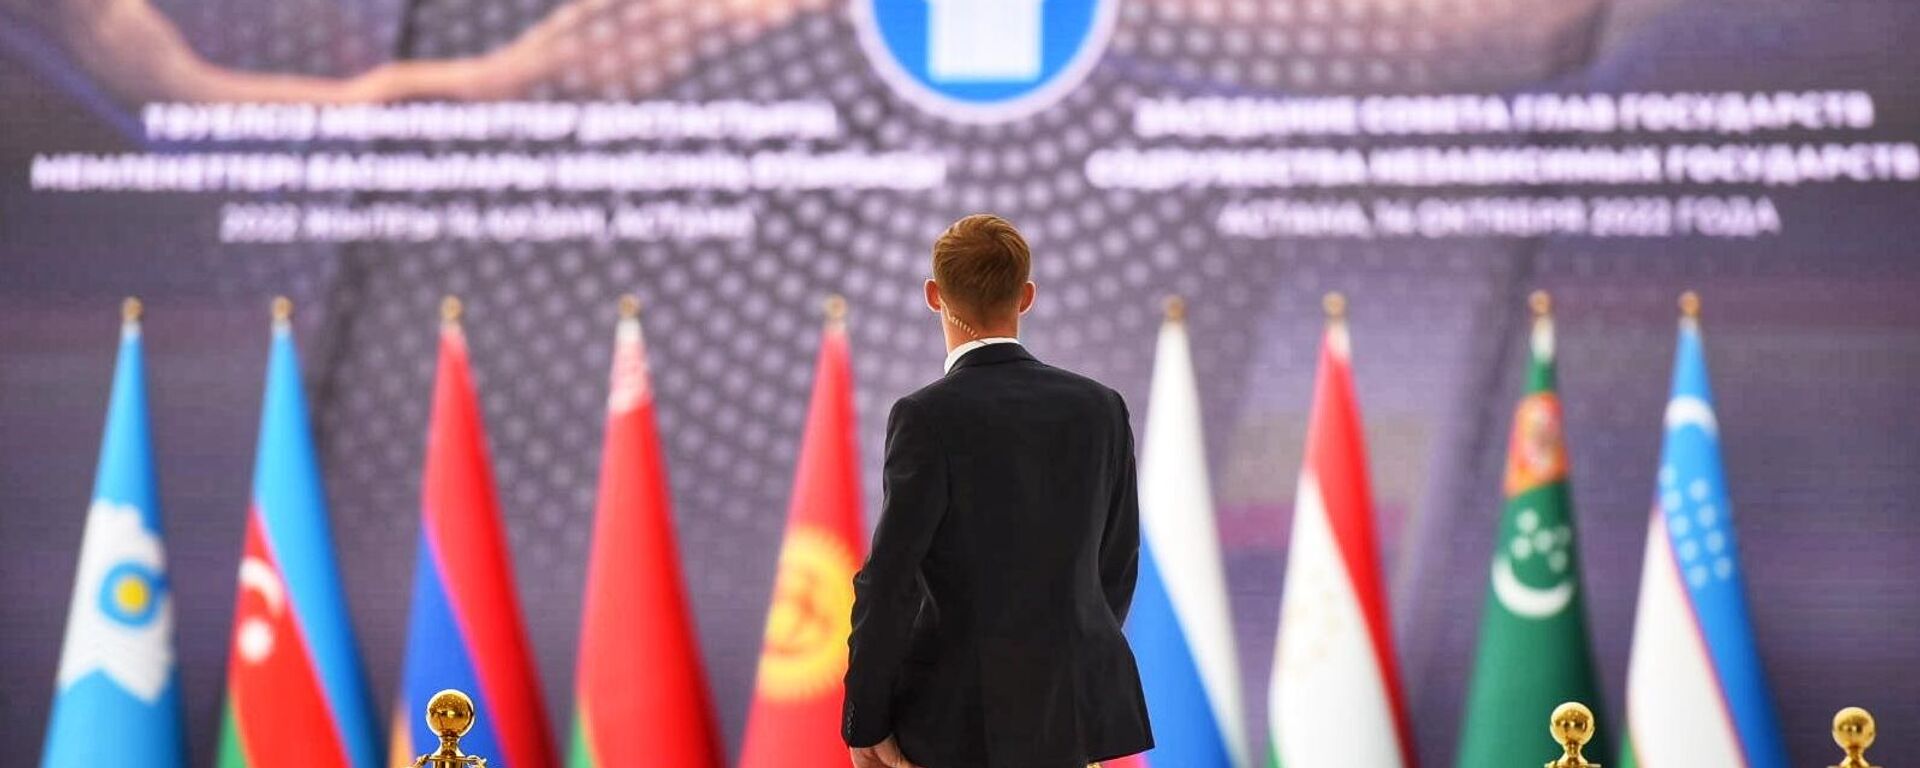 Саммит глав государств СНГ в Астане, 14 октября 2022 года - Sputnik Казахстан, 1920, 14.10.2022